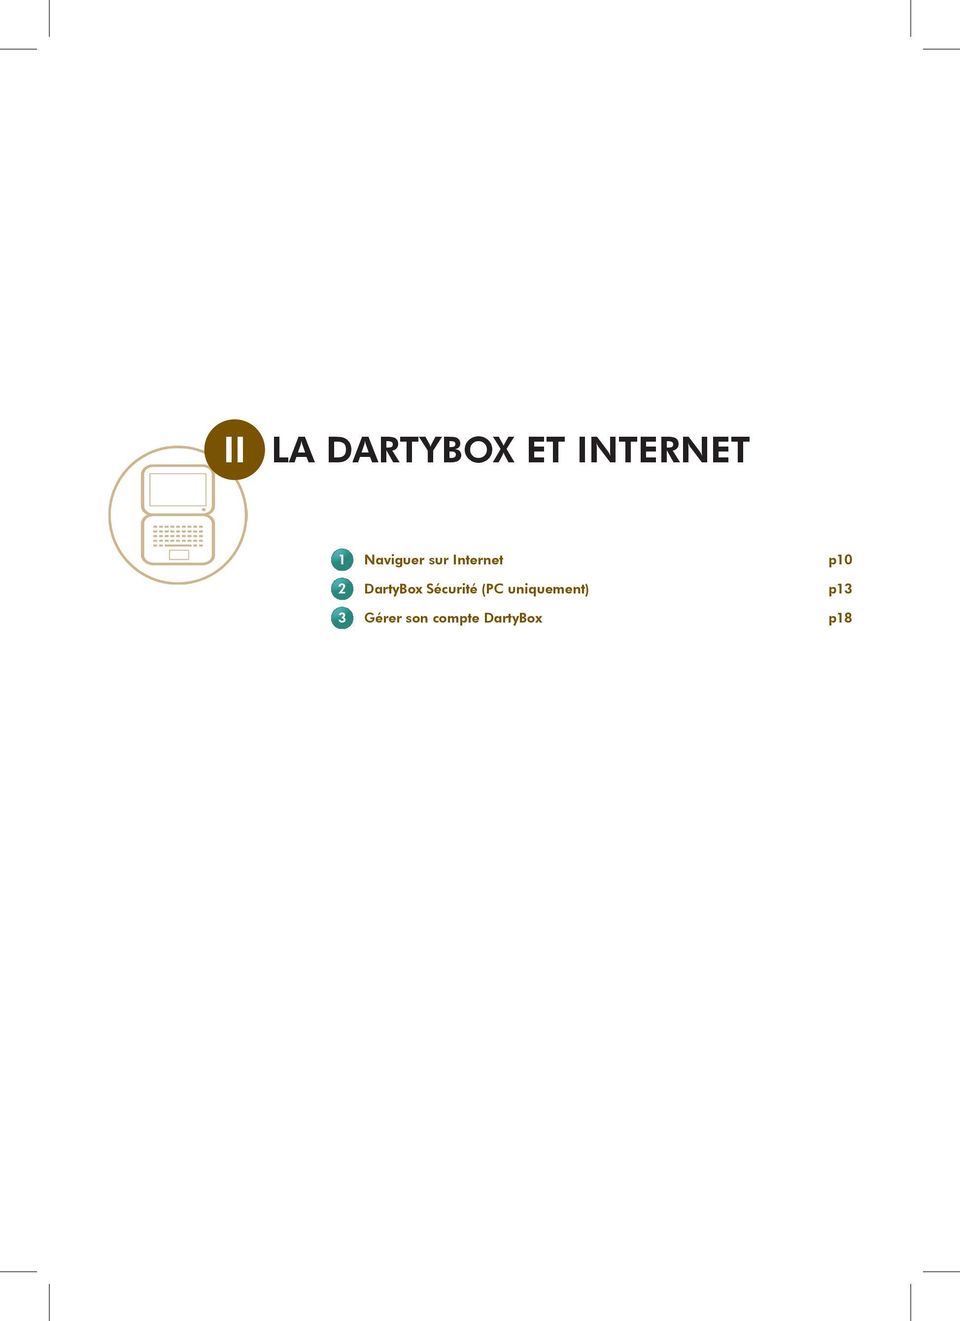 DartyBox Sécurité (PC